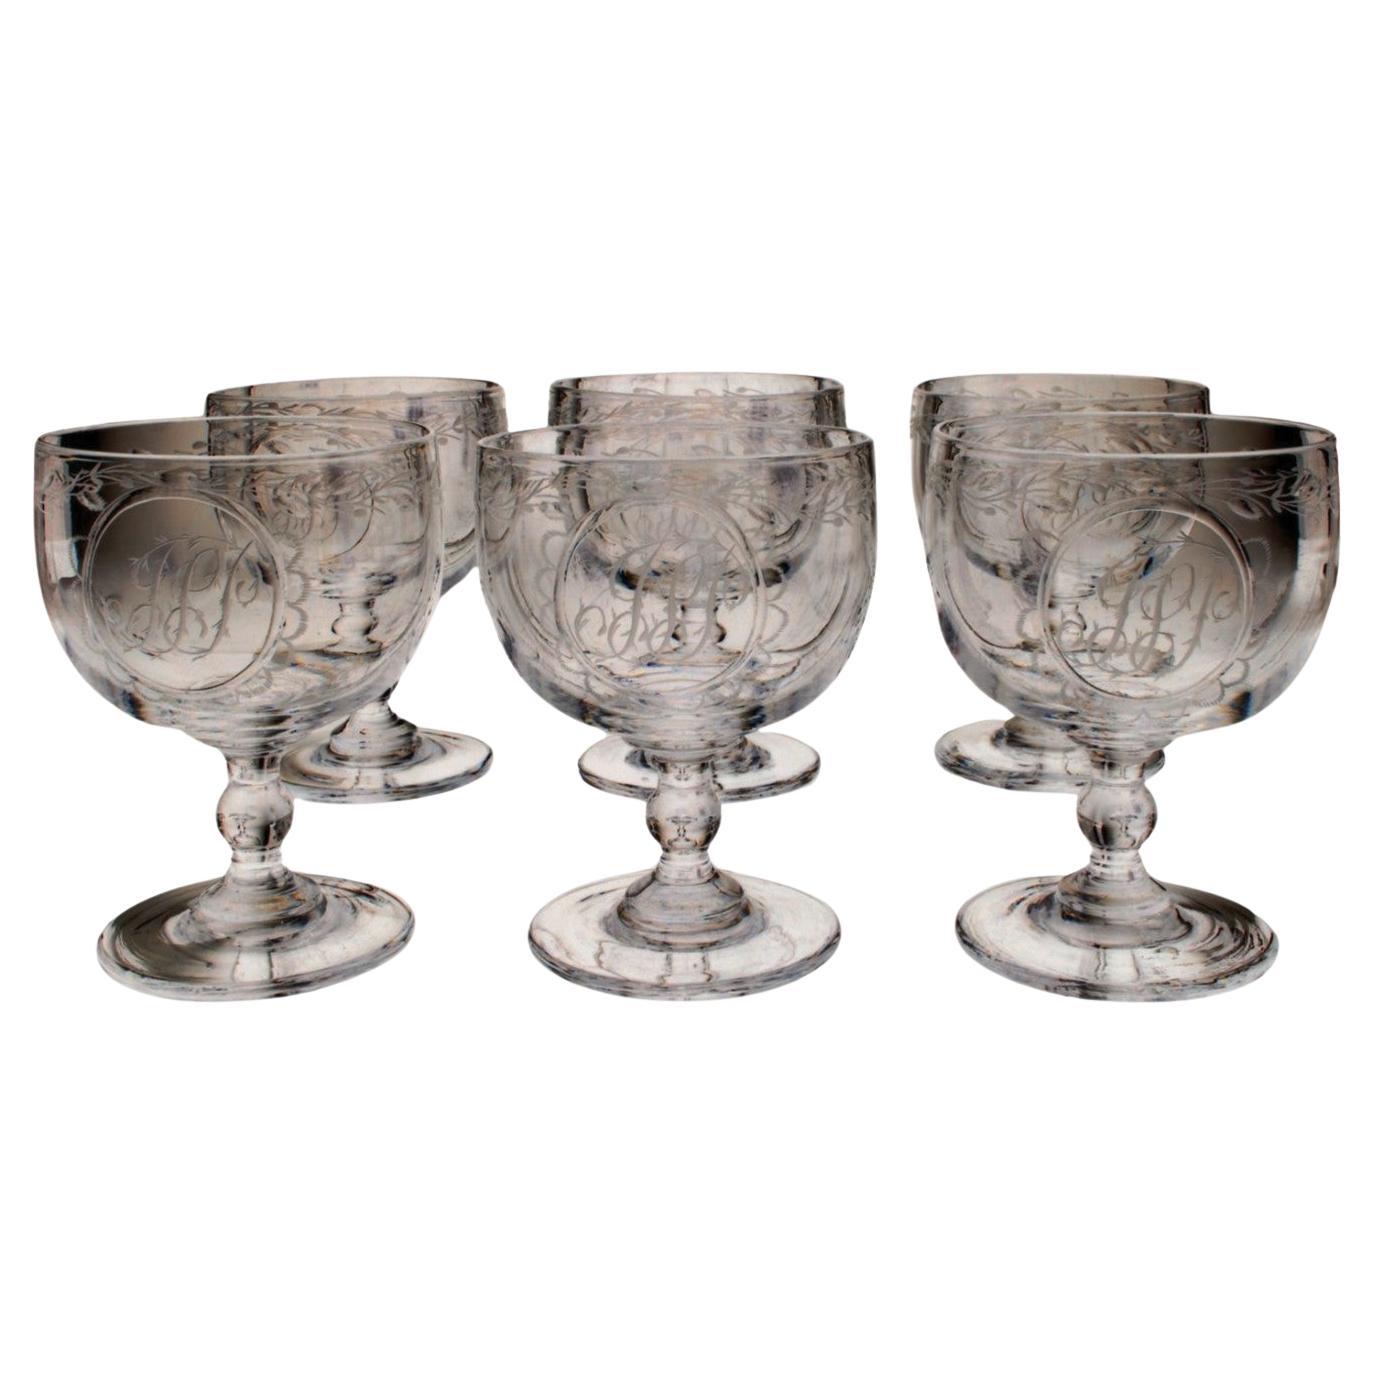 Set of six monogrammed JSP rummers (wine glasses), England, C1830 For Sale